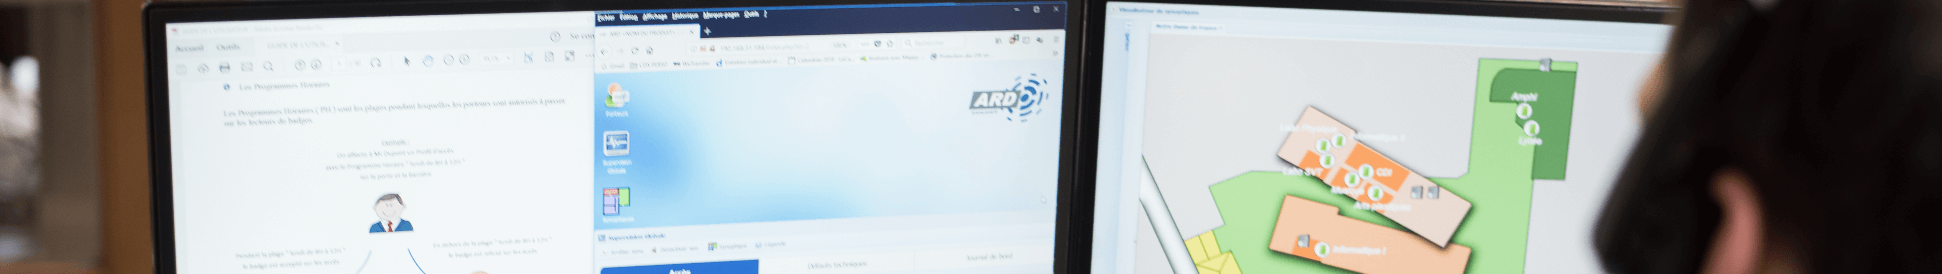 Les logiciels ARD : ACCESS permet la supervision graphique